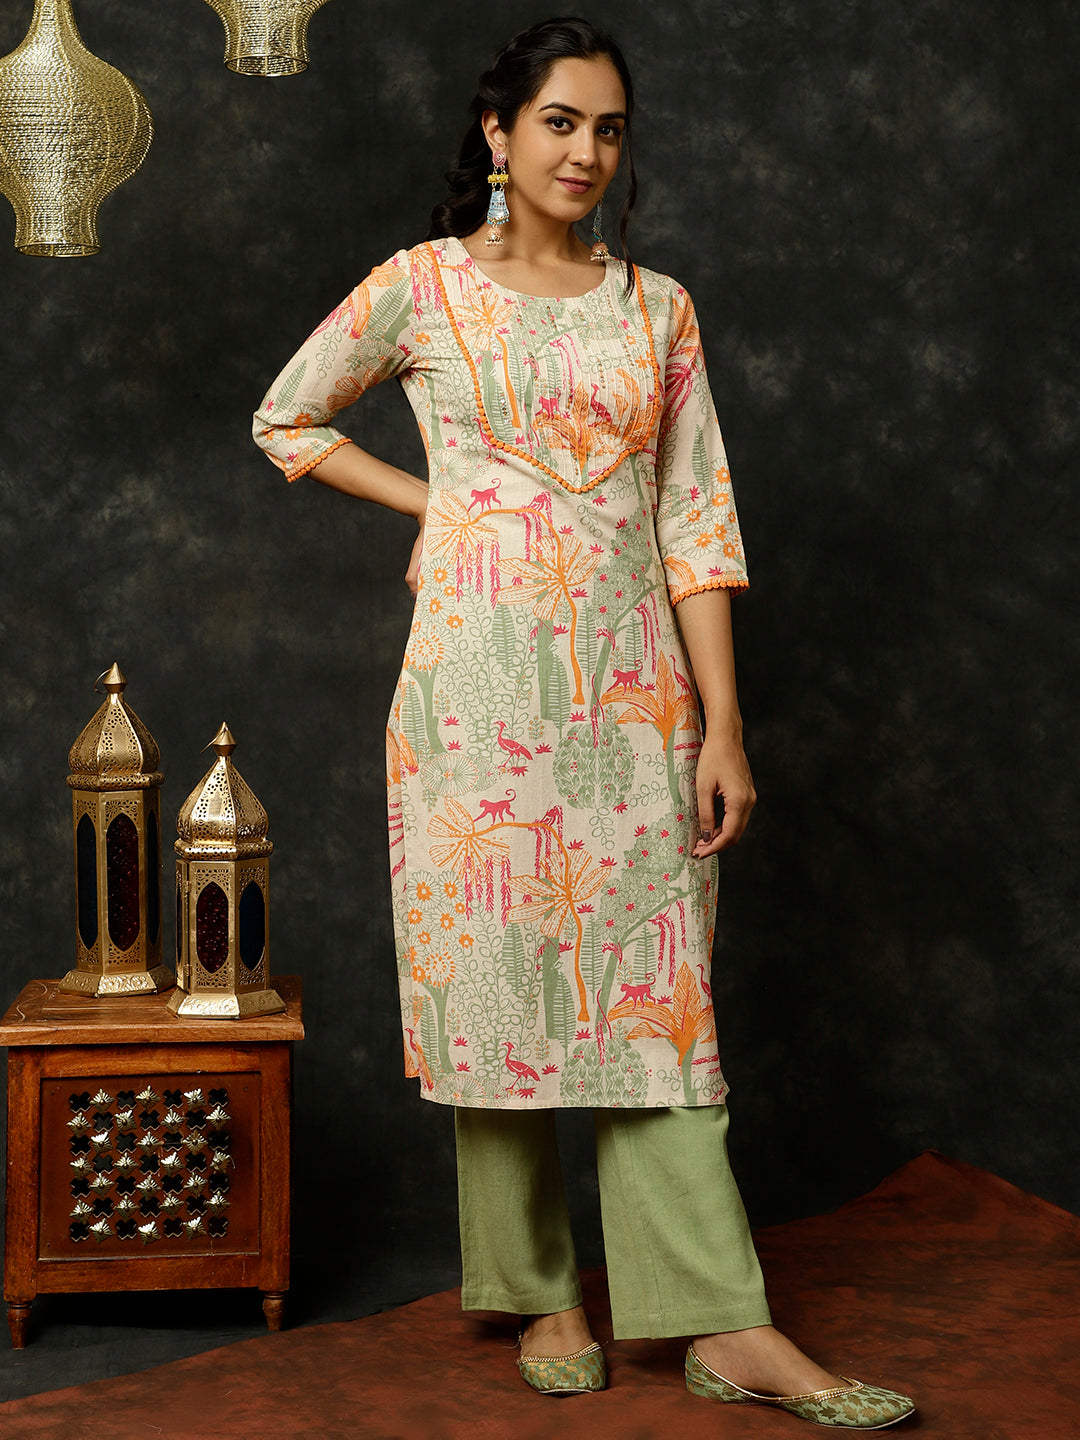 Kantha stitched Kurtis at Best Price in Birbhum | Joyguru Kantha Stitch